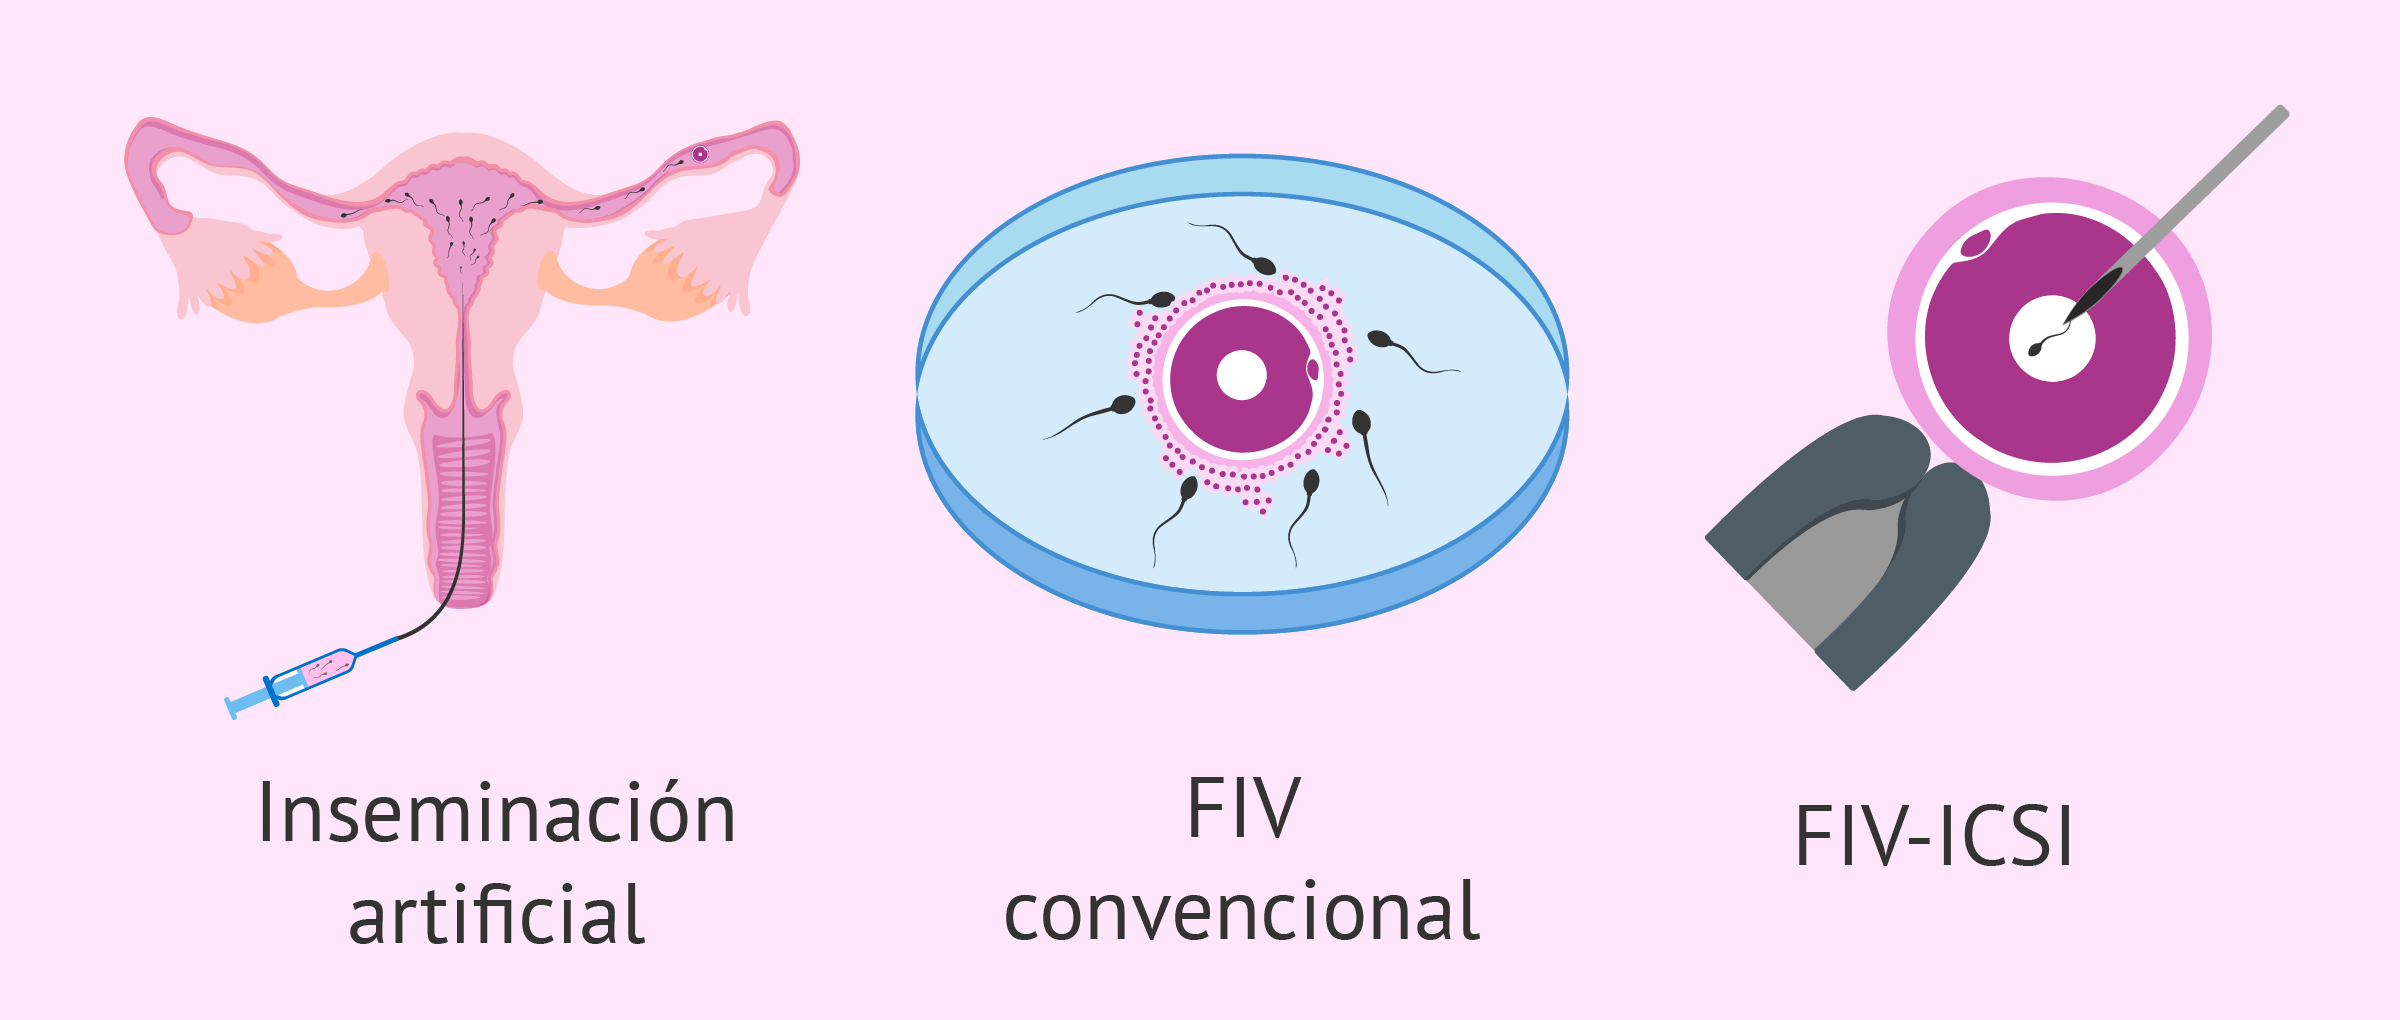 Técnicas de alta y baja complejidad en reproducción asistida